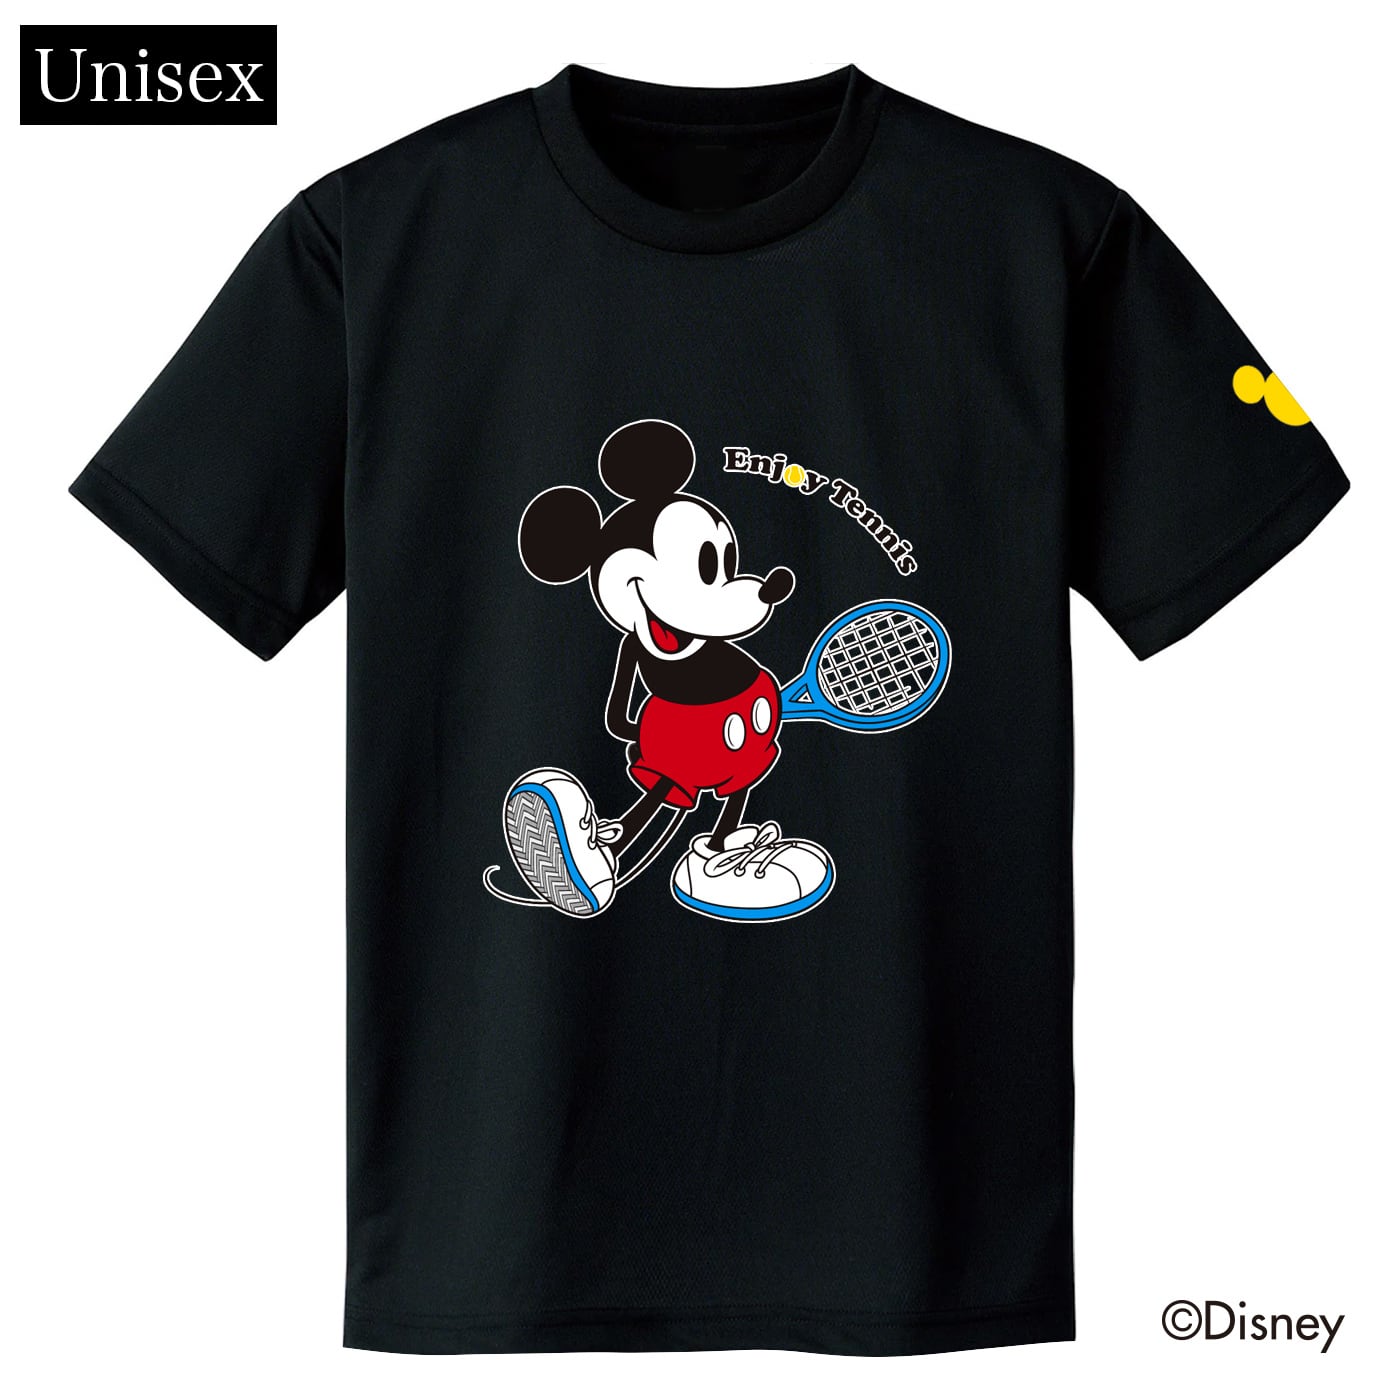 ユニセックス】ミッキーマウス テニス ドライTシャツ ブラック